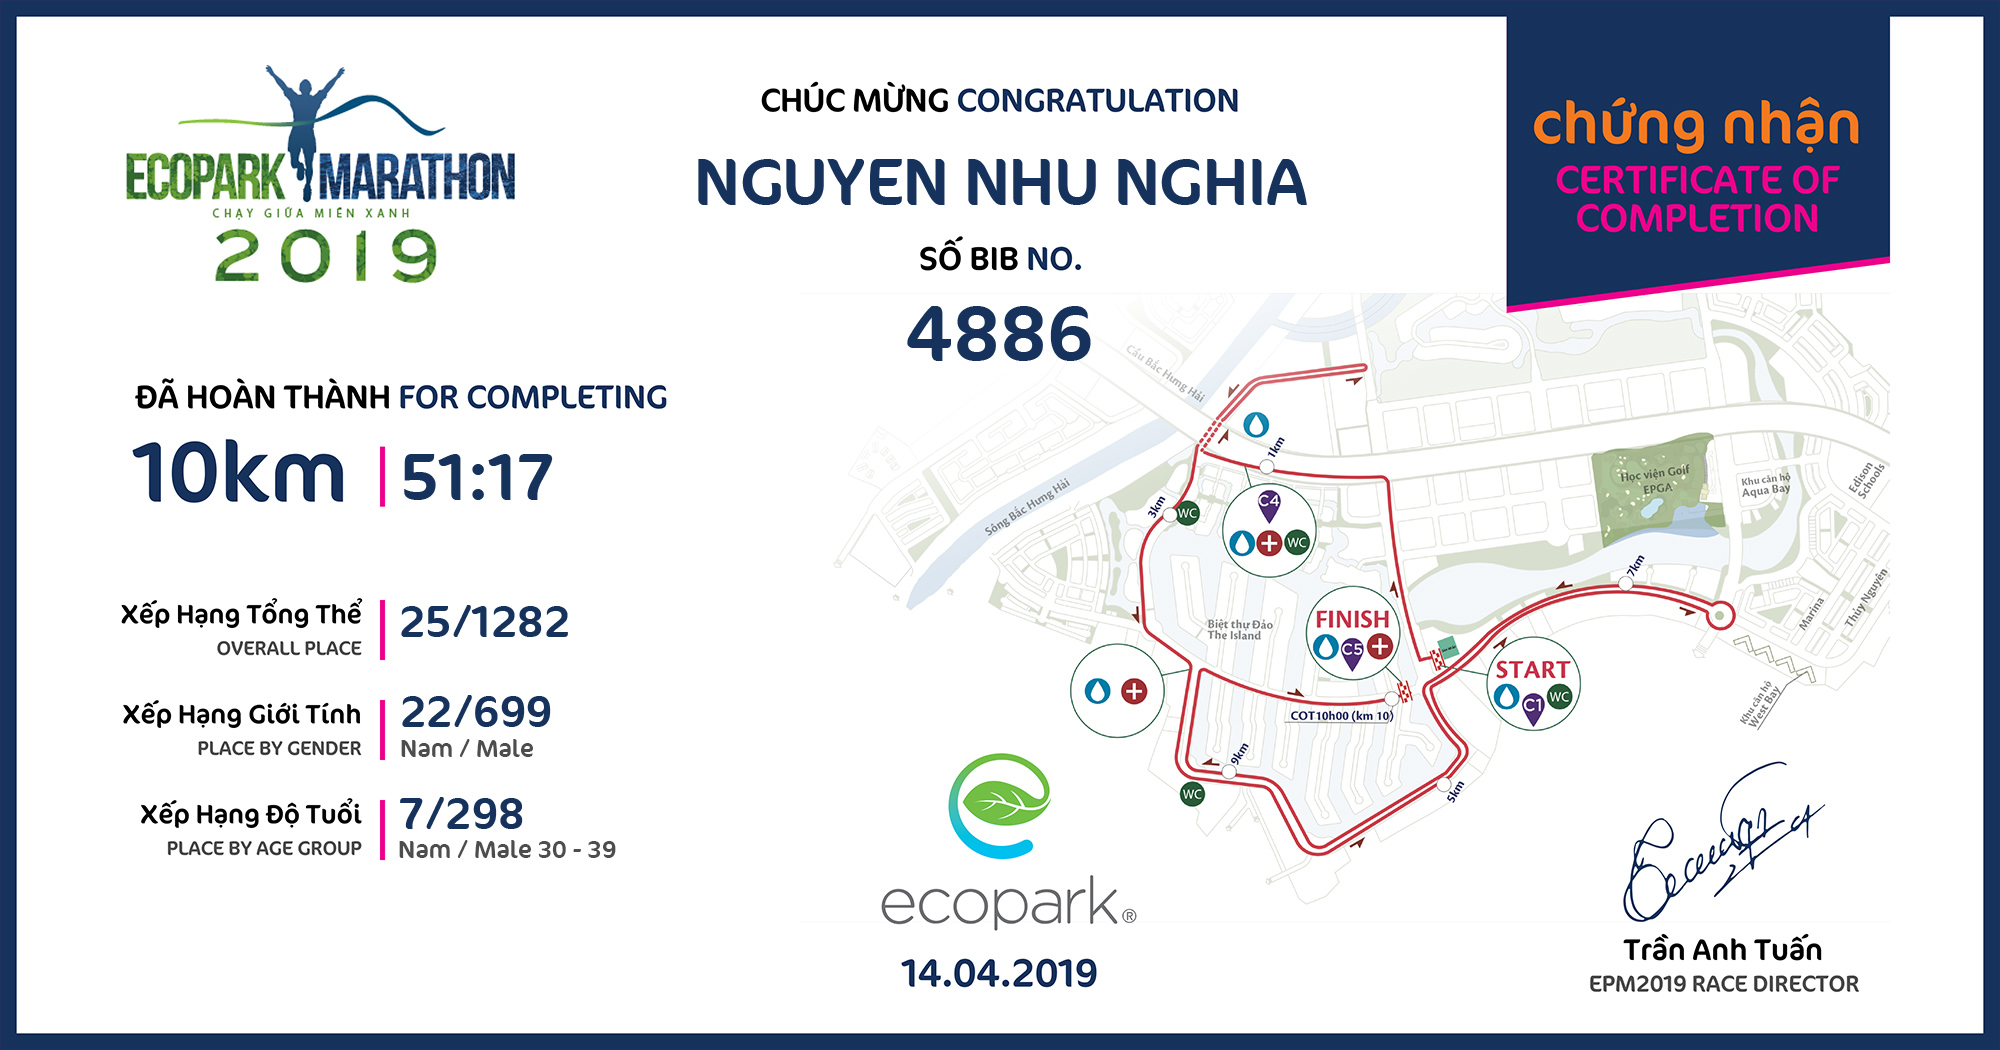 4886 - Nguyen Nhu Nghia